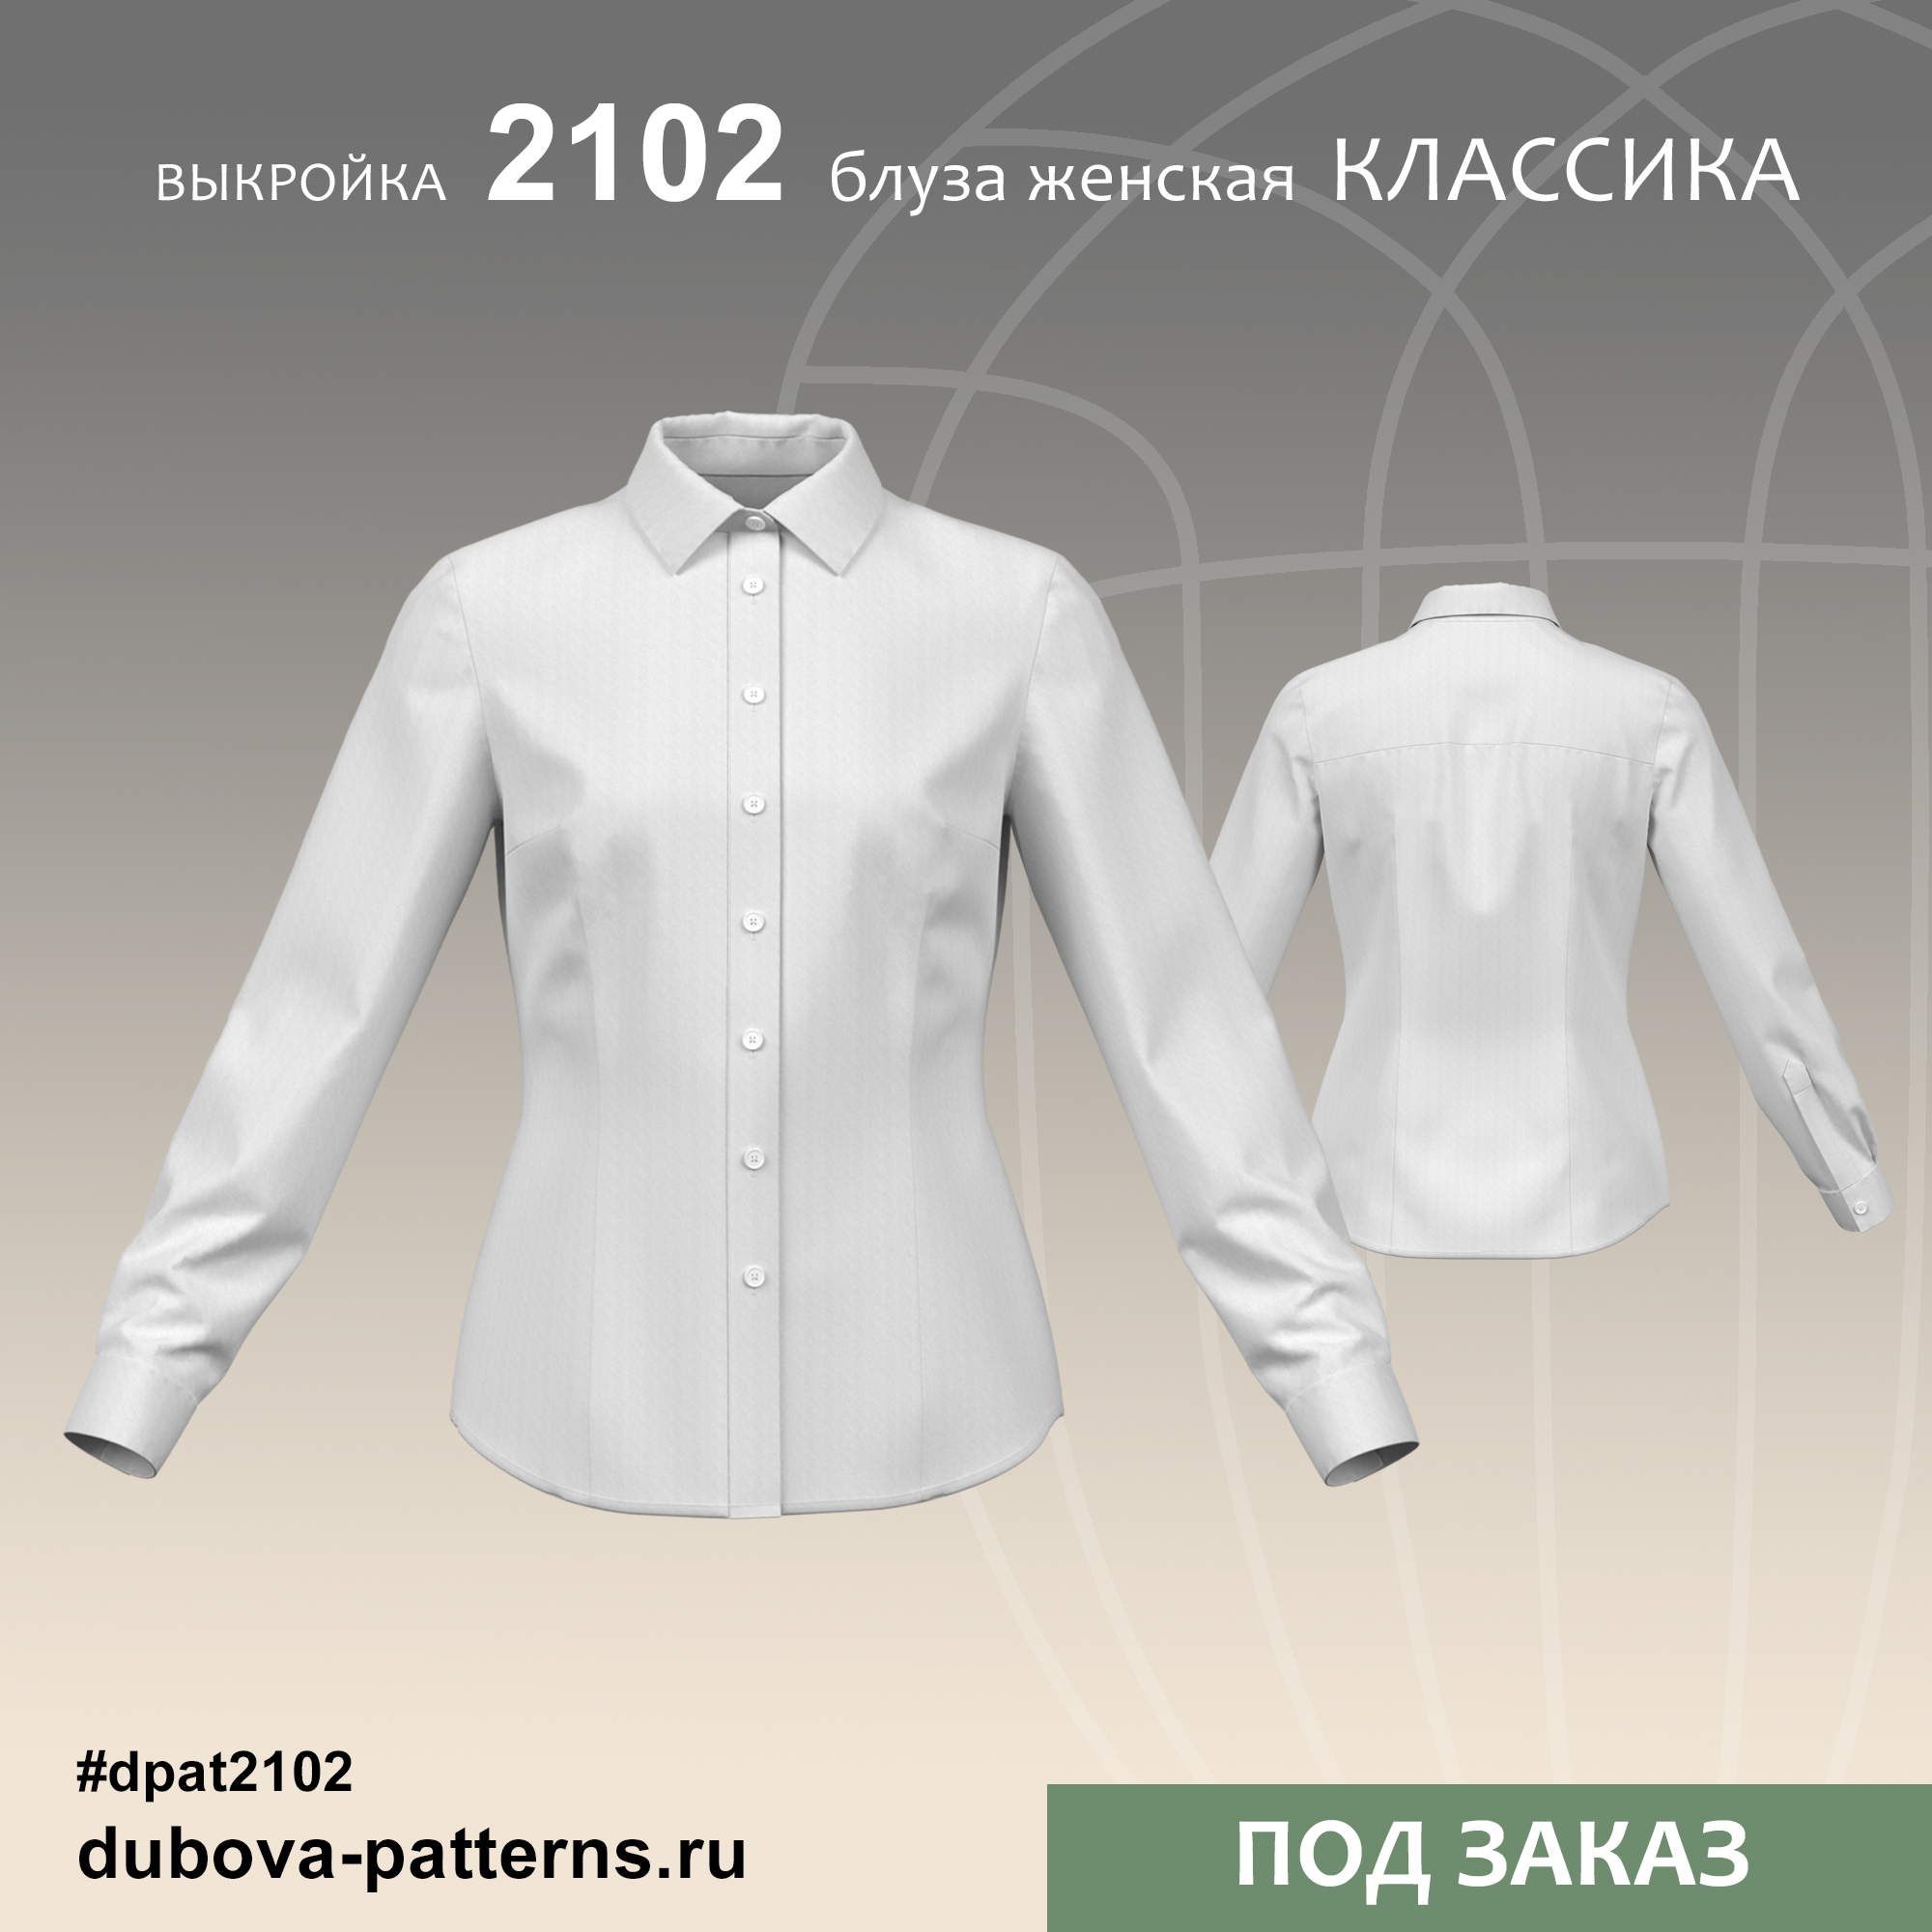 Выкройки и лекала одежды pdf скачать | Dubova Patterns